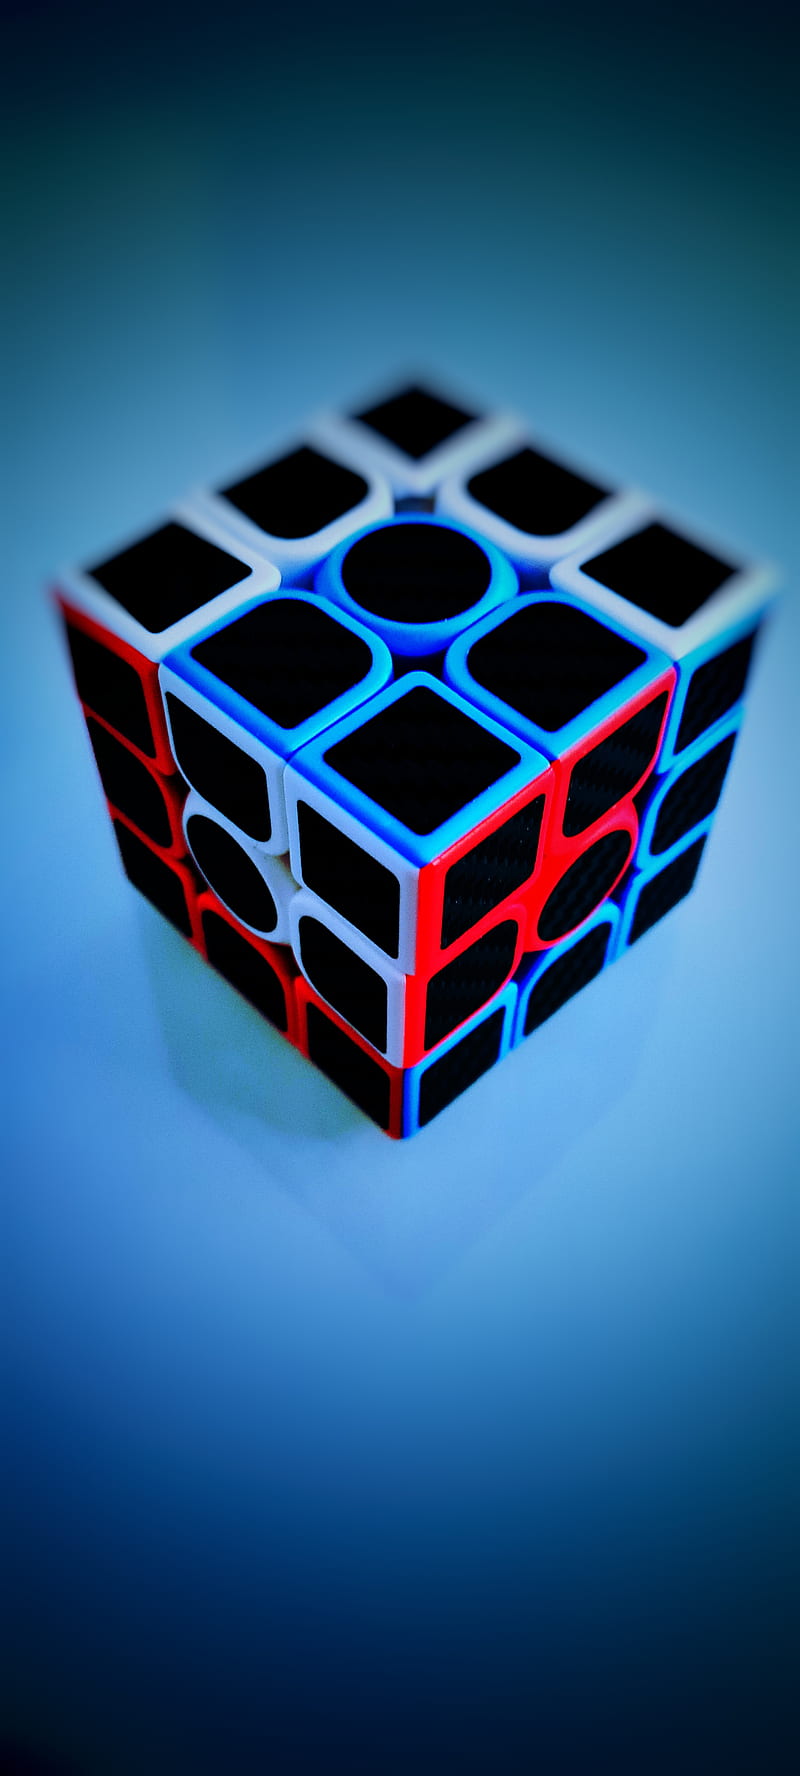 955 Hình Ảnh Rubik Hình Nền Rubik Nhìn Quá Đẹp Quá Chất